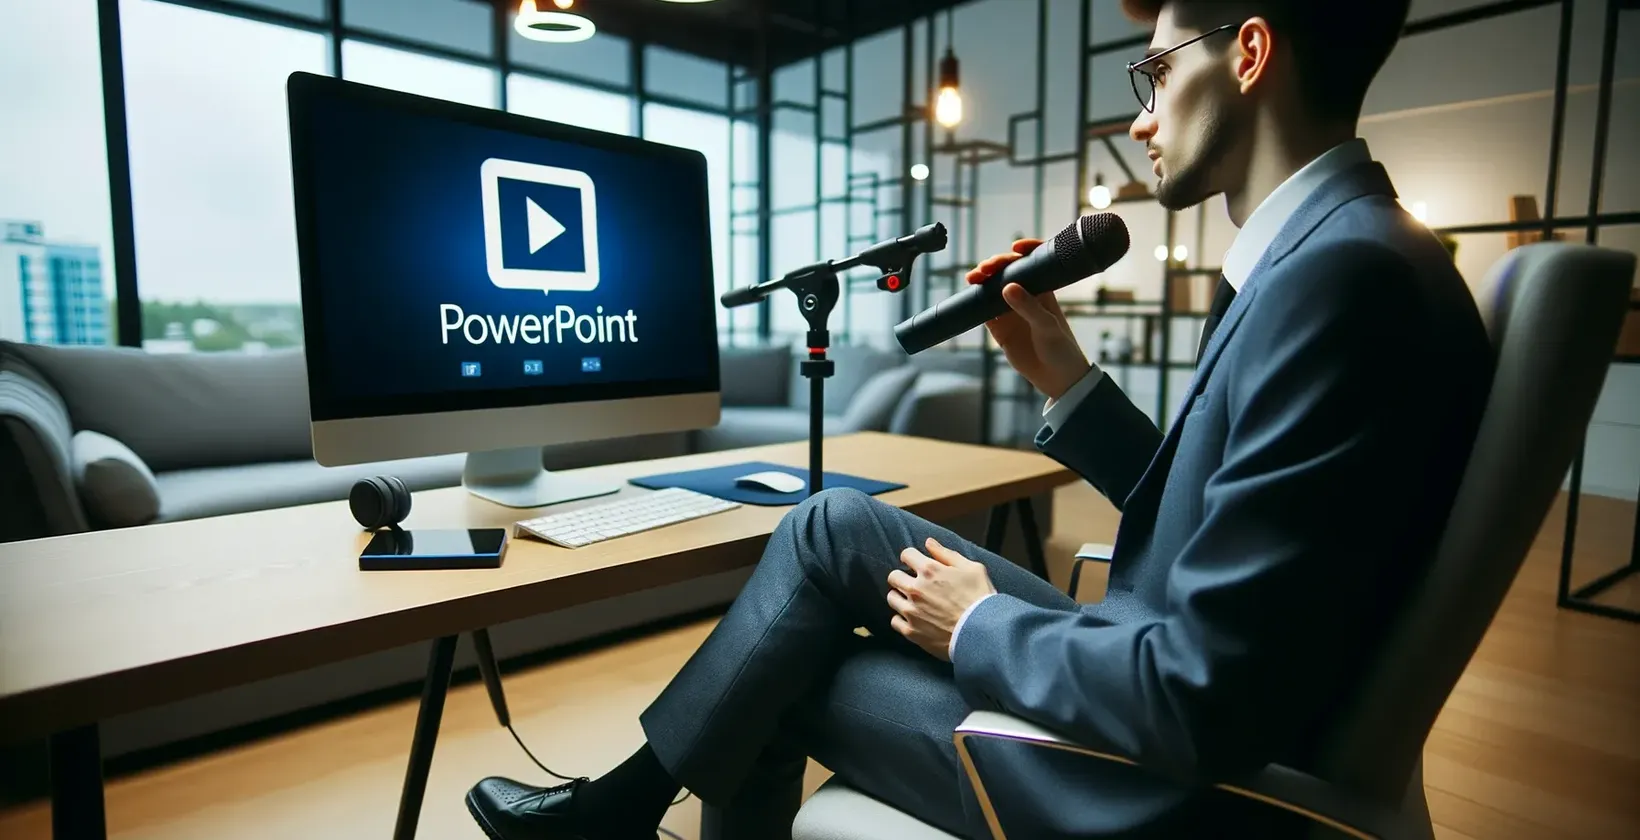 Homem no escritório com microfone olha para o monitor que exibe o logotipo PowerPoint.